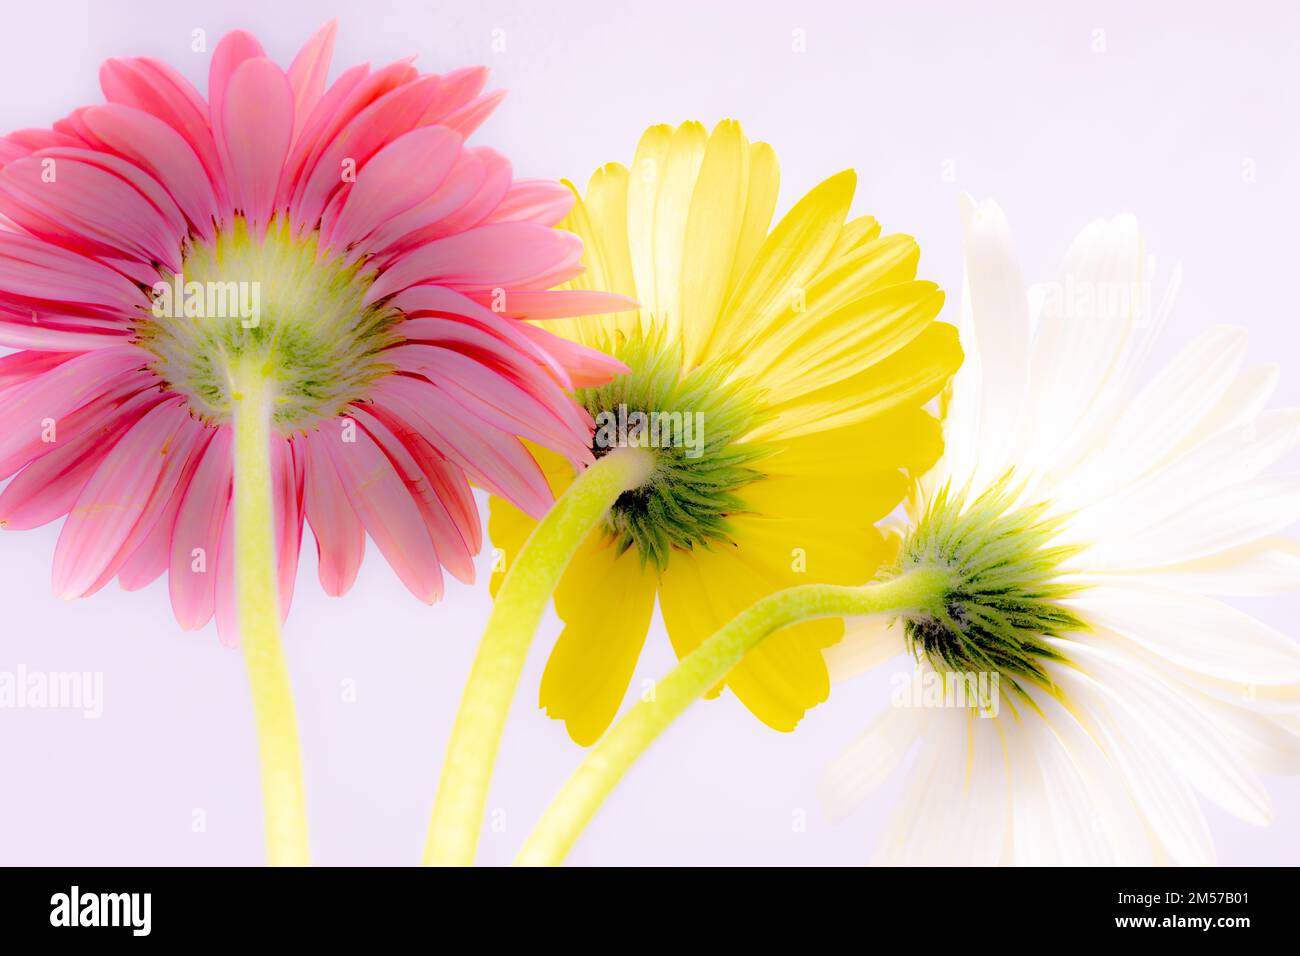 Bild von Gerbera-Blumen mit Stielen, leuchtenden Farben und weißem Hintergrund Stockfoto